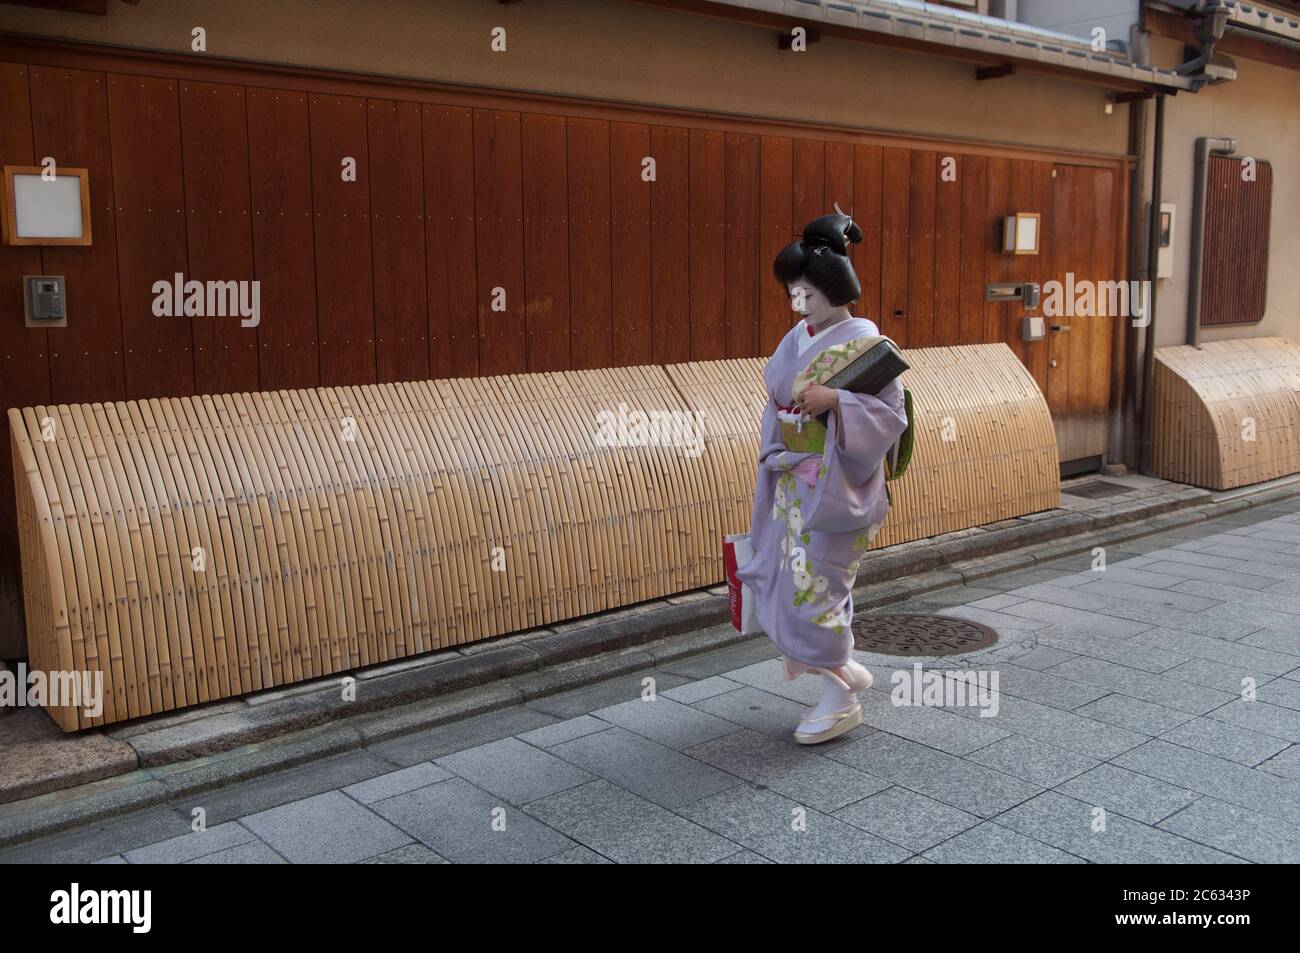 Una mujer japonesa en el vestido tradicional de Geisha caminando en una calle en el distrito de Gion, Kyoto, Japón Foto de stock